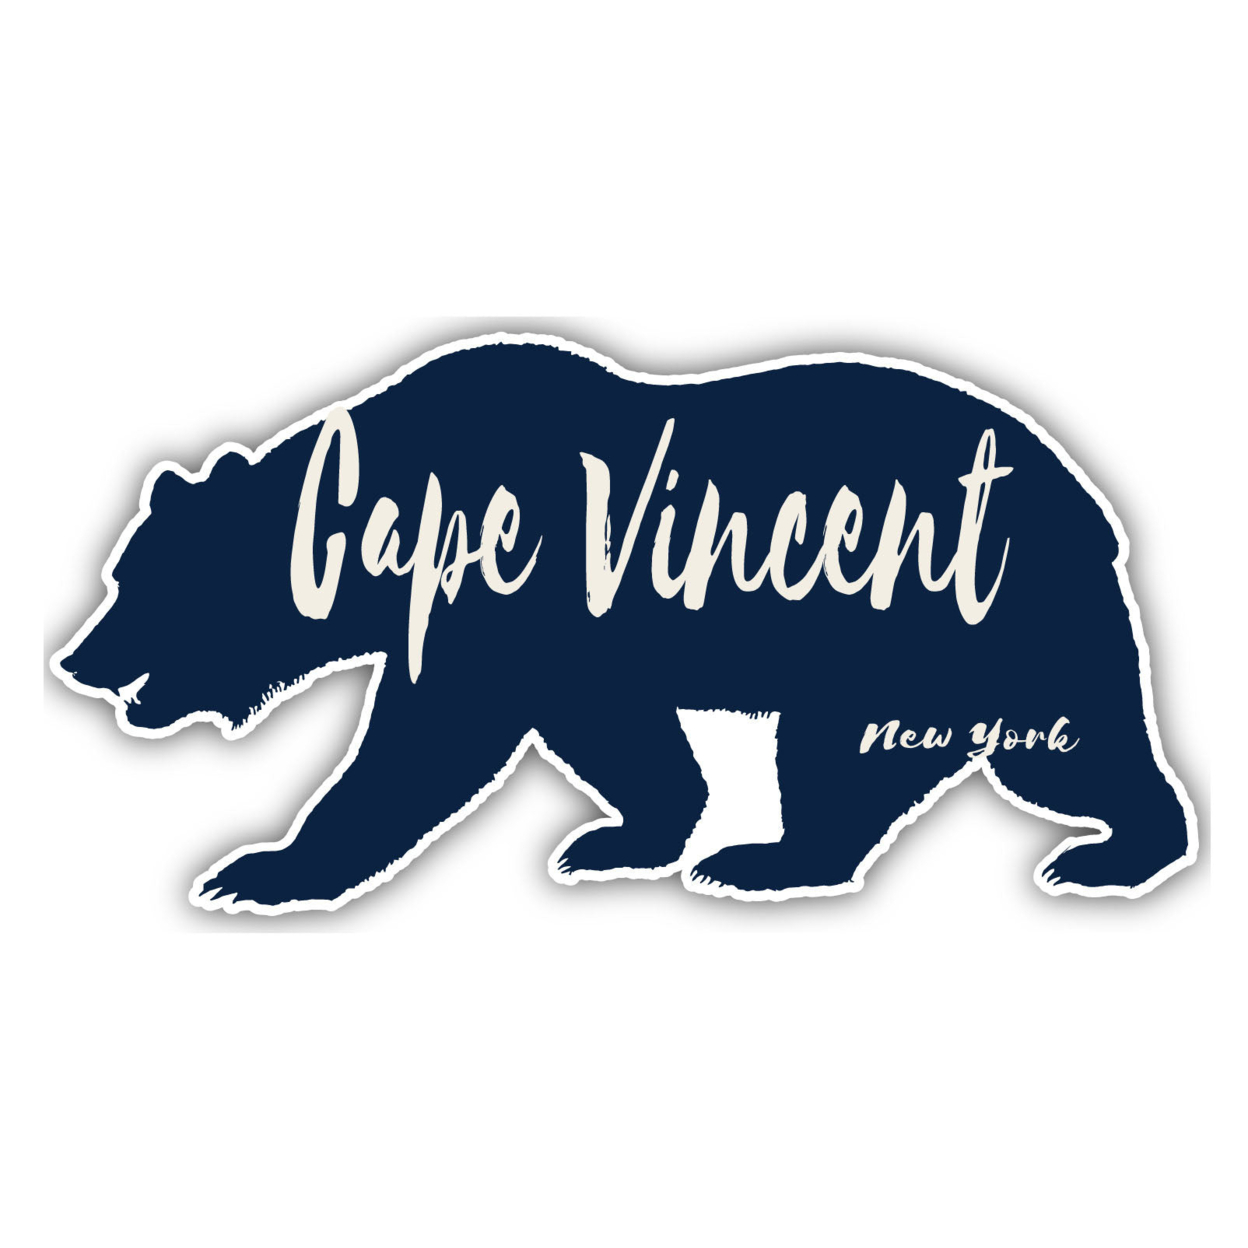 Cape Vincent New York Souvenir Decorative Stickers (Choose Theme And Size) - Single Unit, 10-Inch, Bear